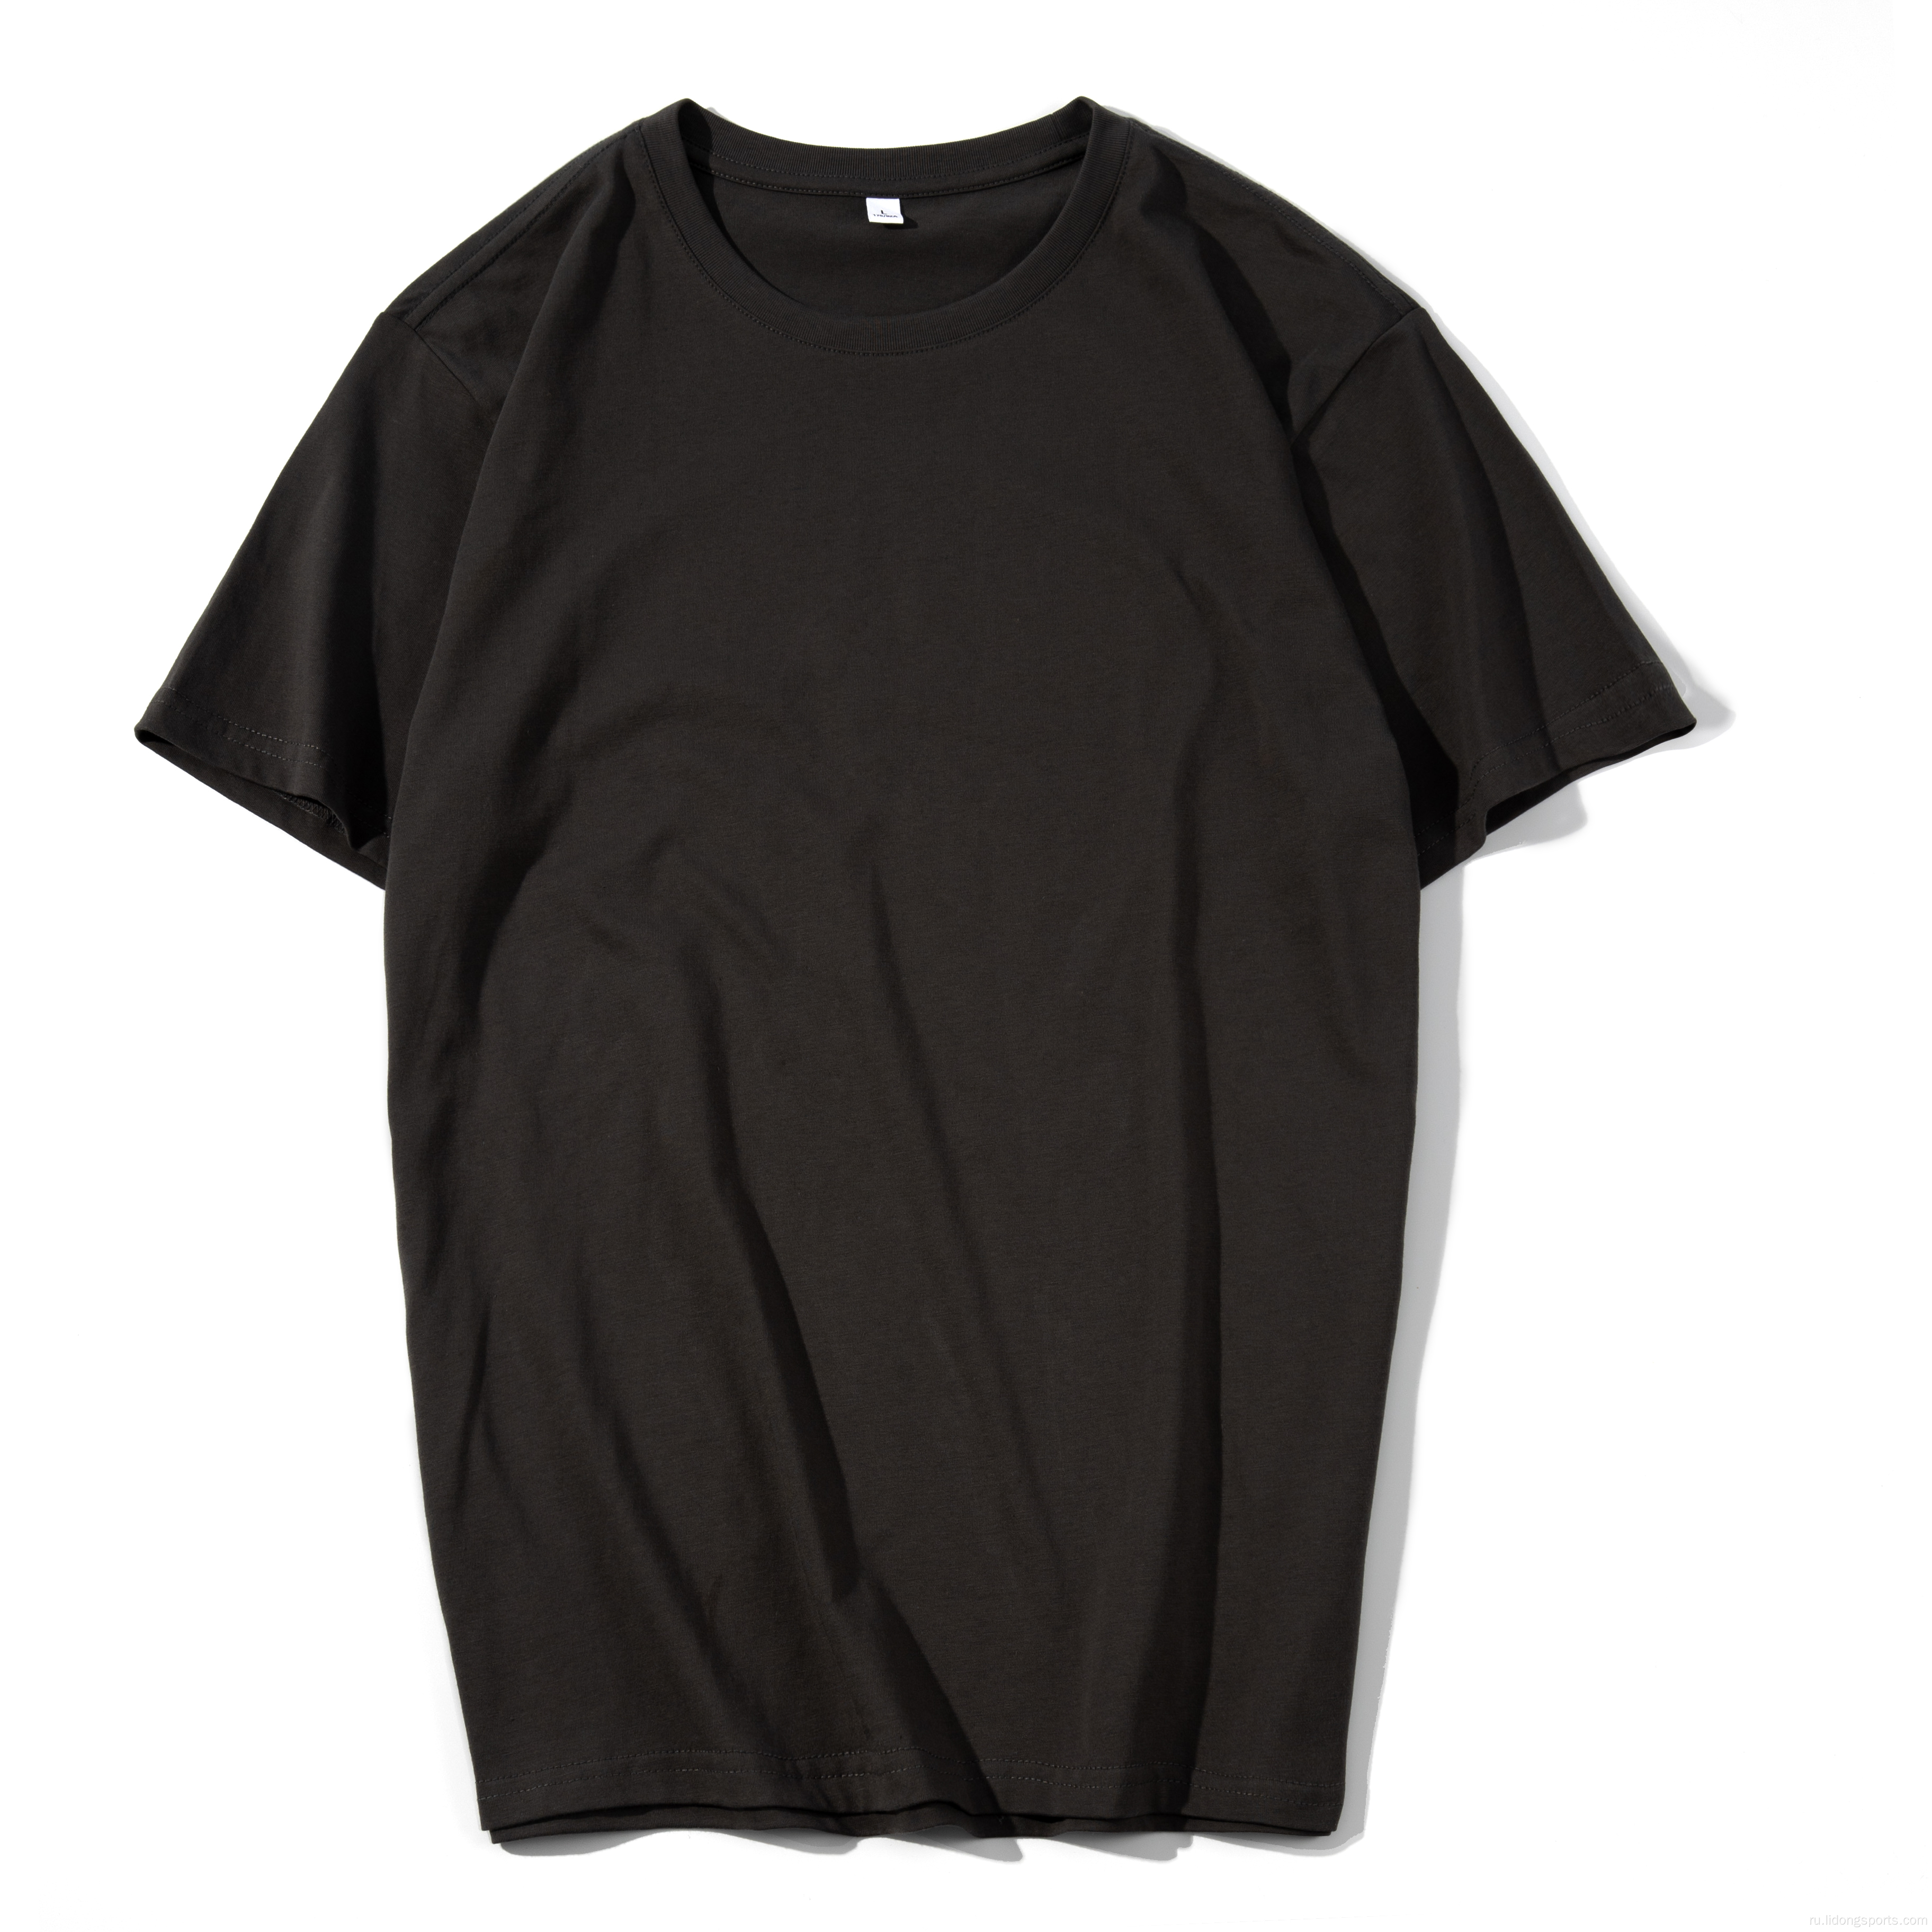 Мужская футболка Unisex Plain 100% хлопок негабаритная футболка